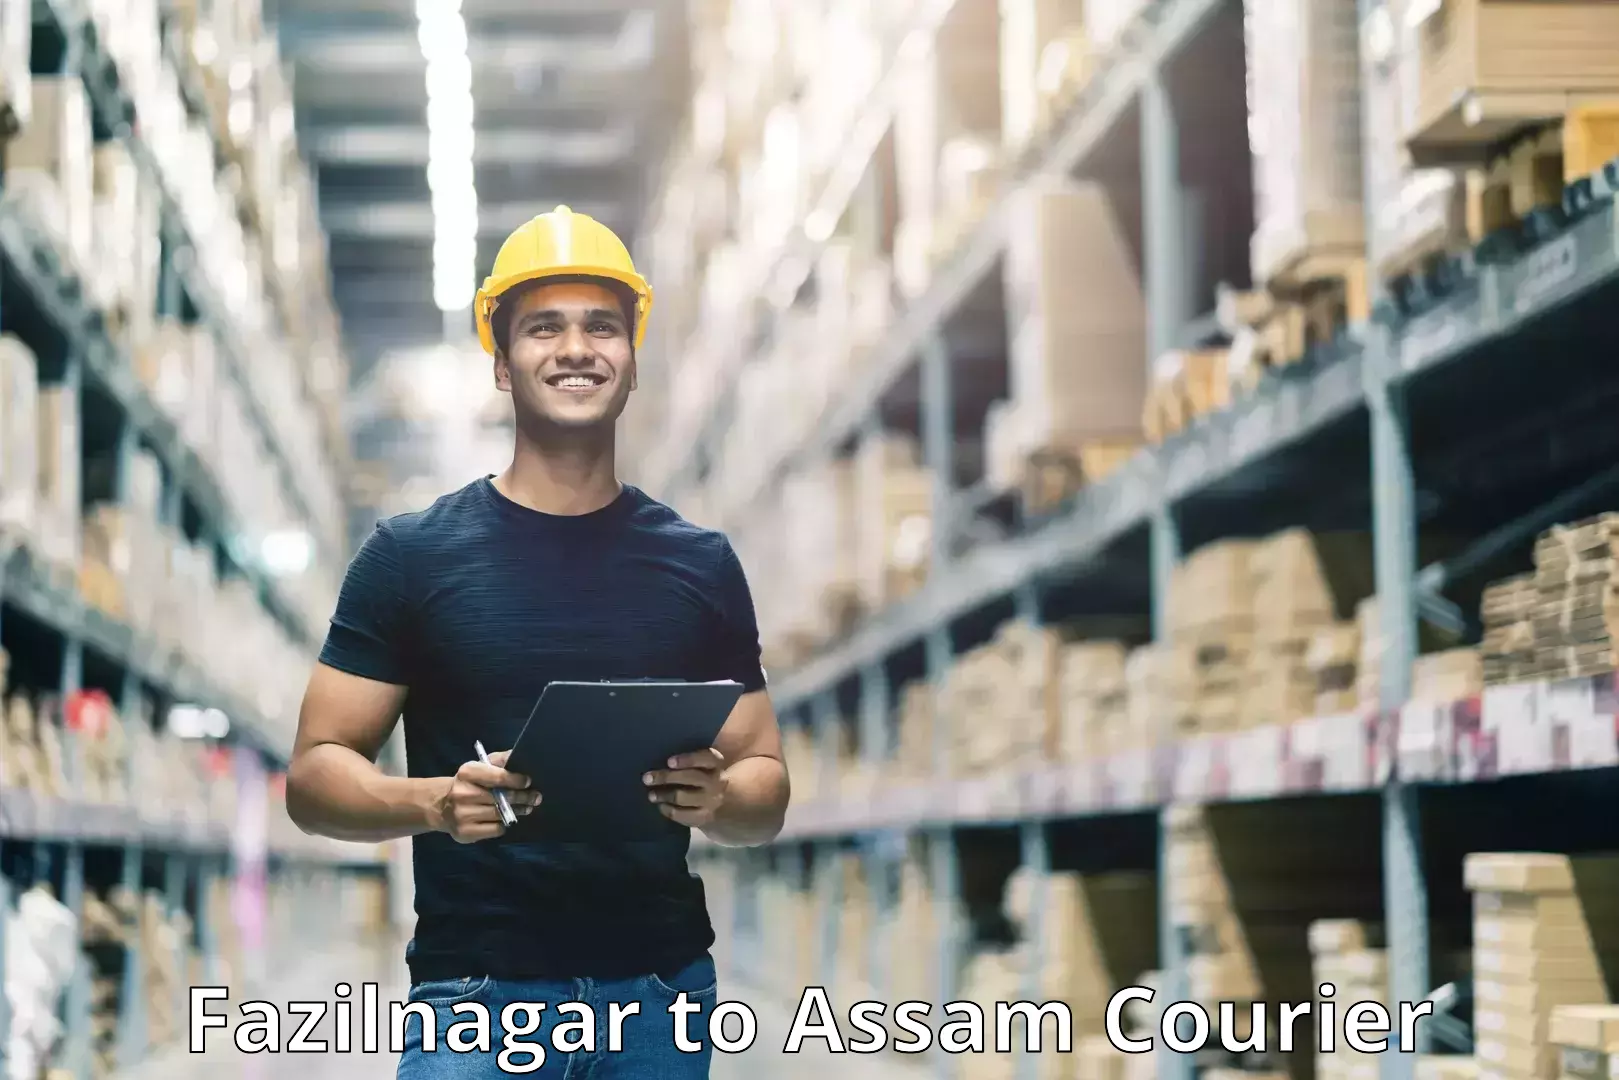 Smart shipping technology Fazilnagar to Silchar